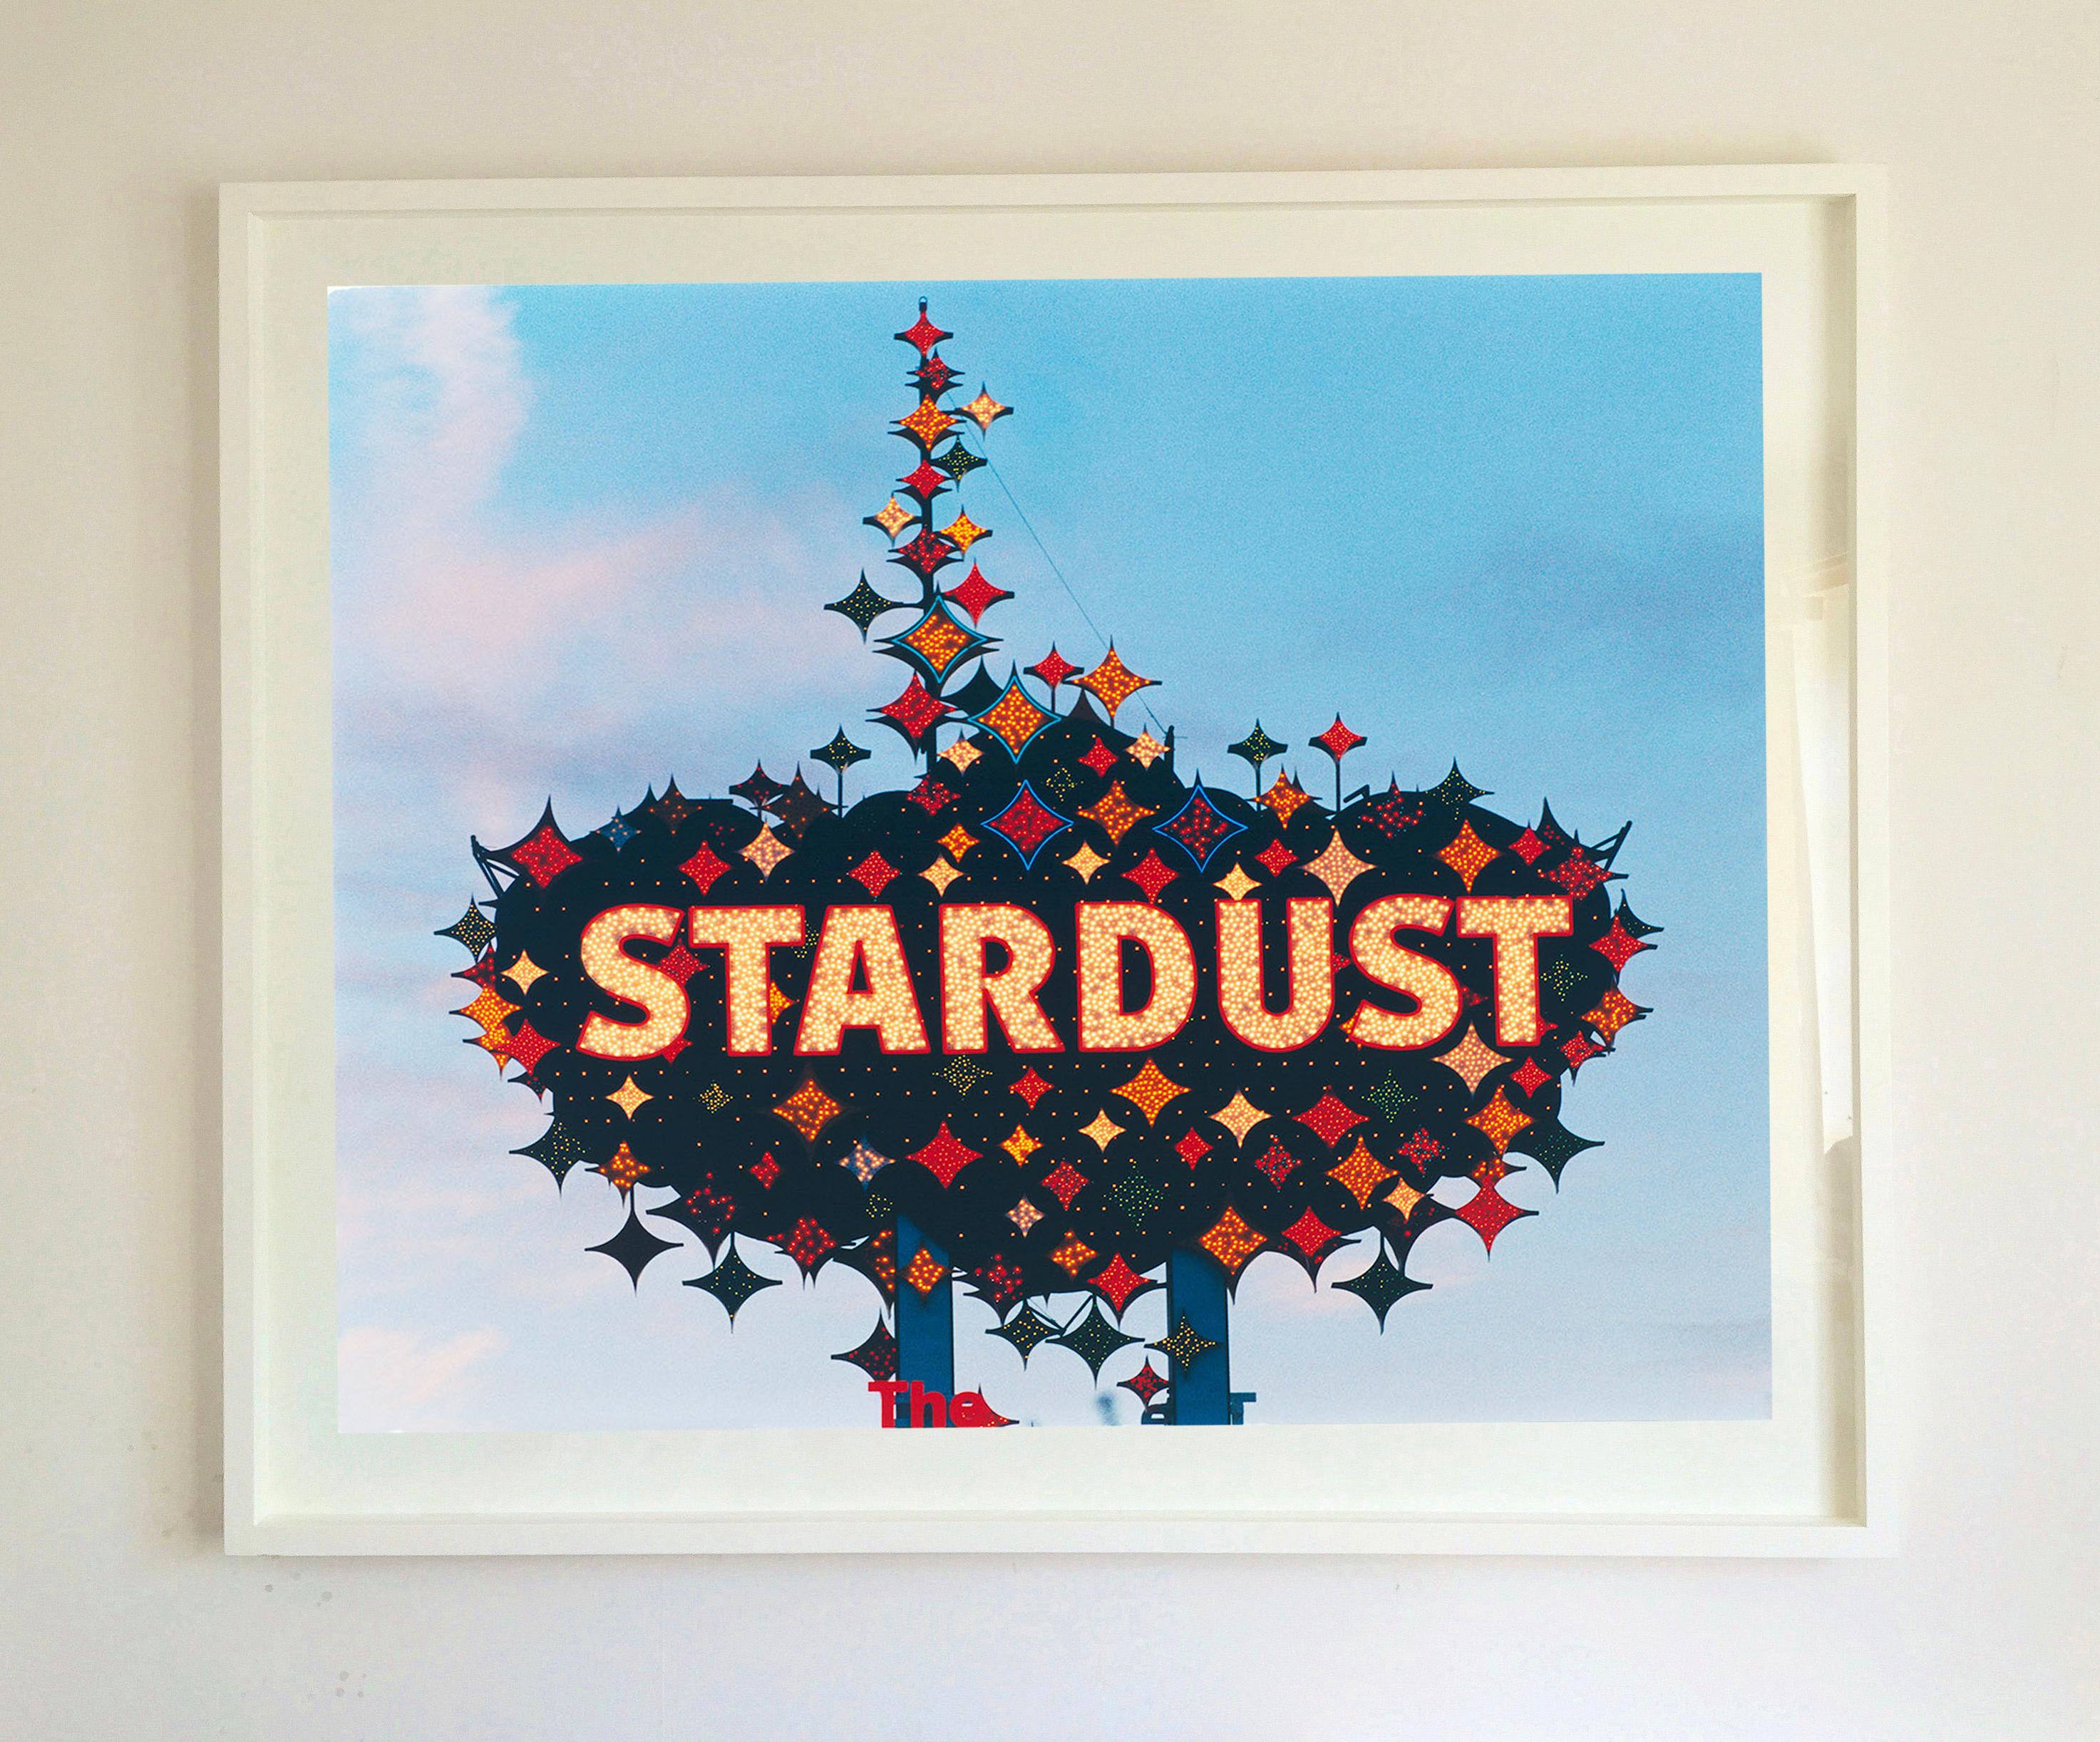 Stardust, photographie de la série Dream in Colour de Richard Heeps.
Cette photo cool a un côté classique américain. Les photos de Richard Heeps capturent magnifiquement des parties de Las Vegas qui n'existent plus. L'emblématique enseigne